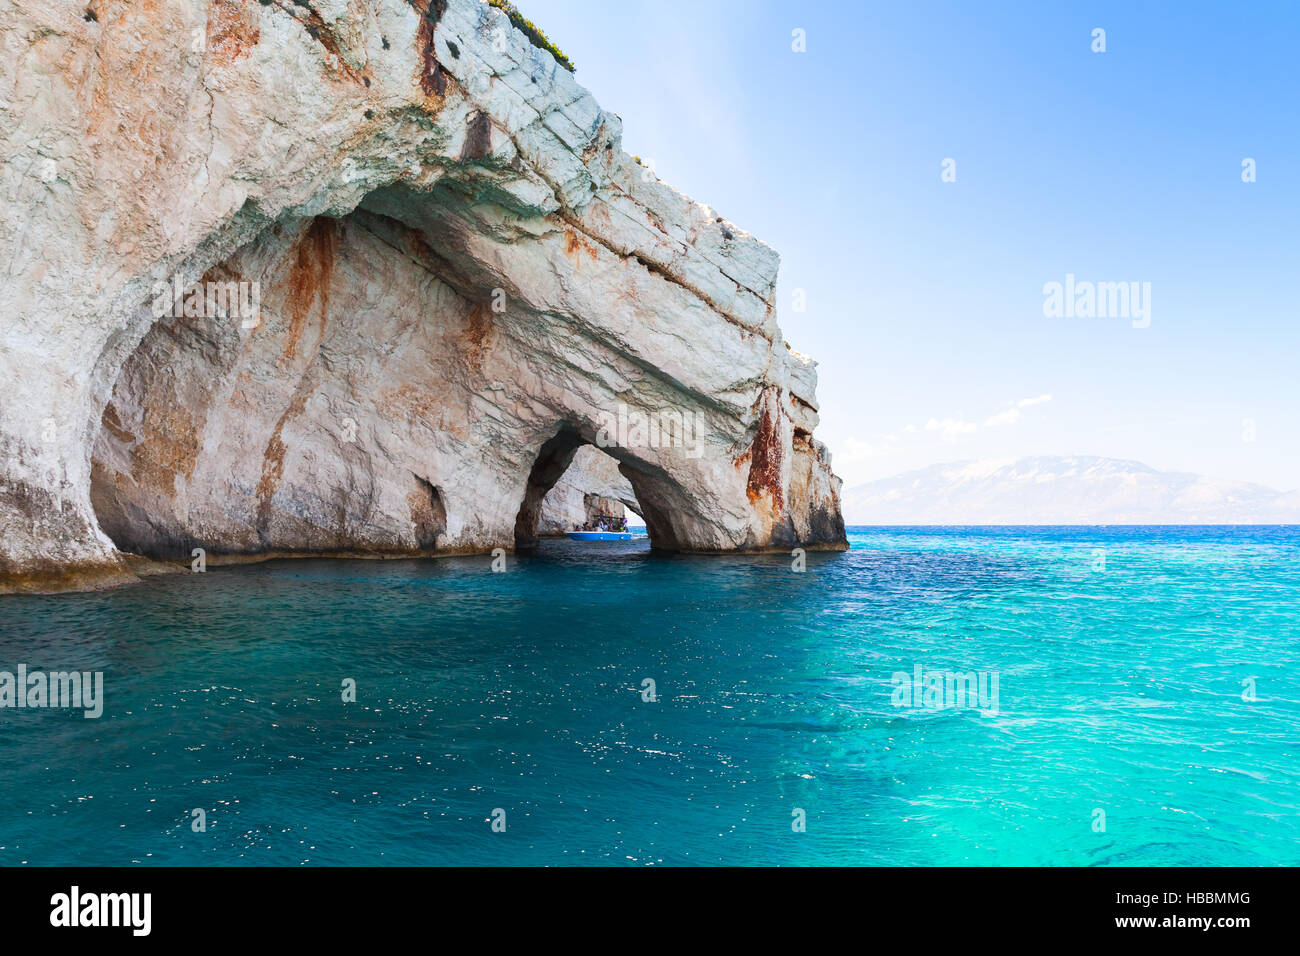 Grotte blu, rocce costiere dell'isola greca di Zante naturale con archi di pietra Foto Stock